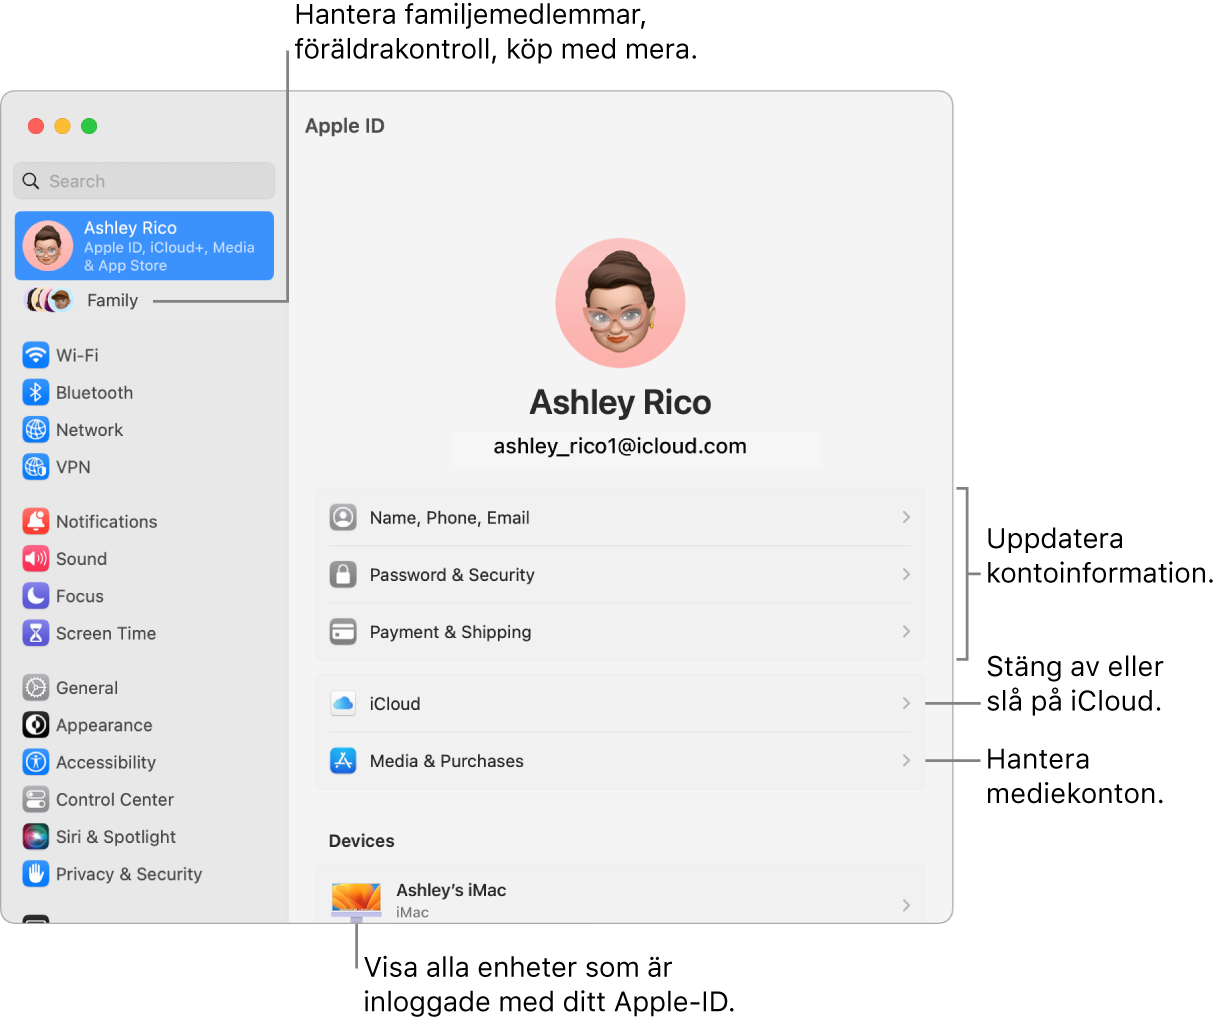 Nastavitve Apple ID v System Settings z oblački za posodobitev informacij o računu, vklop ali izklop funkcij iCloud, upravljanje predstavnostnih računov in Family, kjer lahko upravljate družinske člane, starševski nadzor, nakupe in še več.